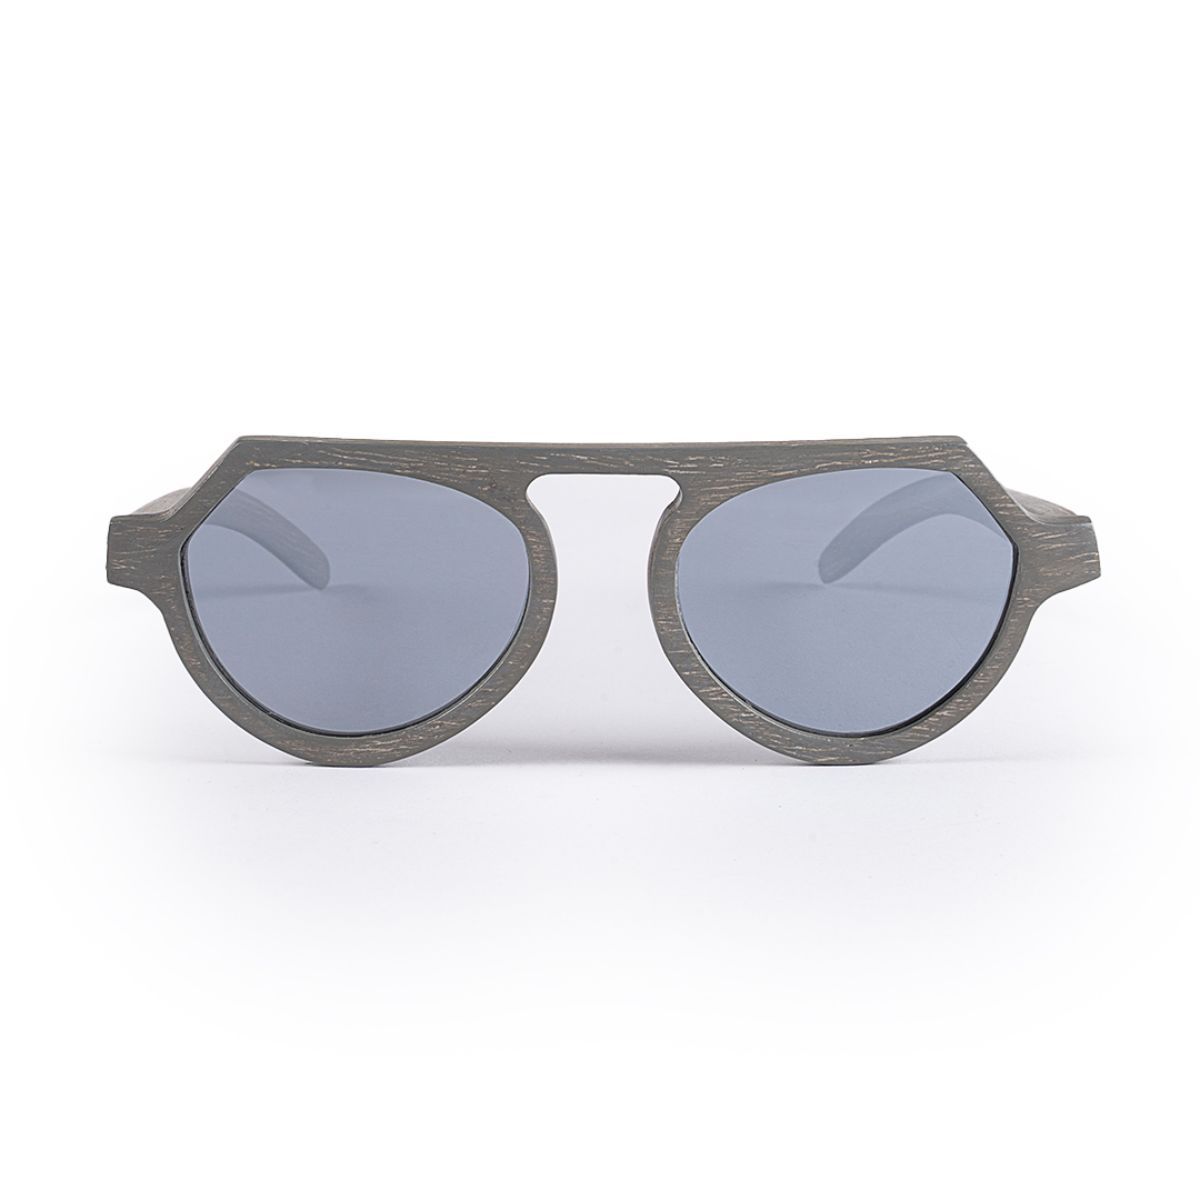 Buy SASHA VRSG-120 Standard Size Full Rim Sunglasses Online